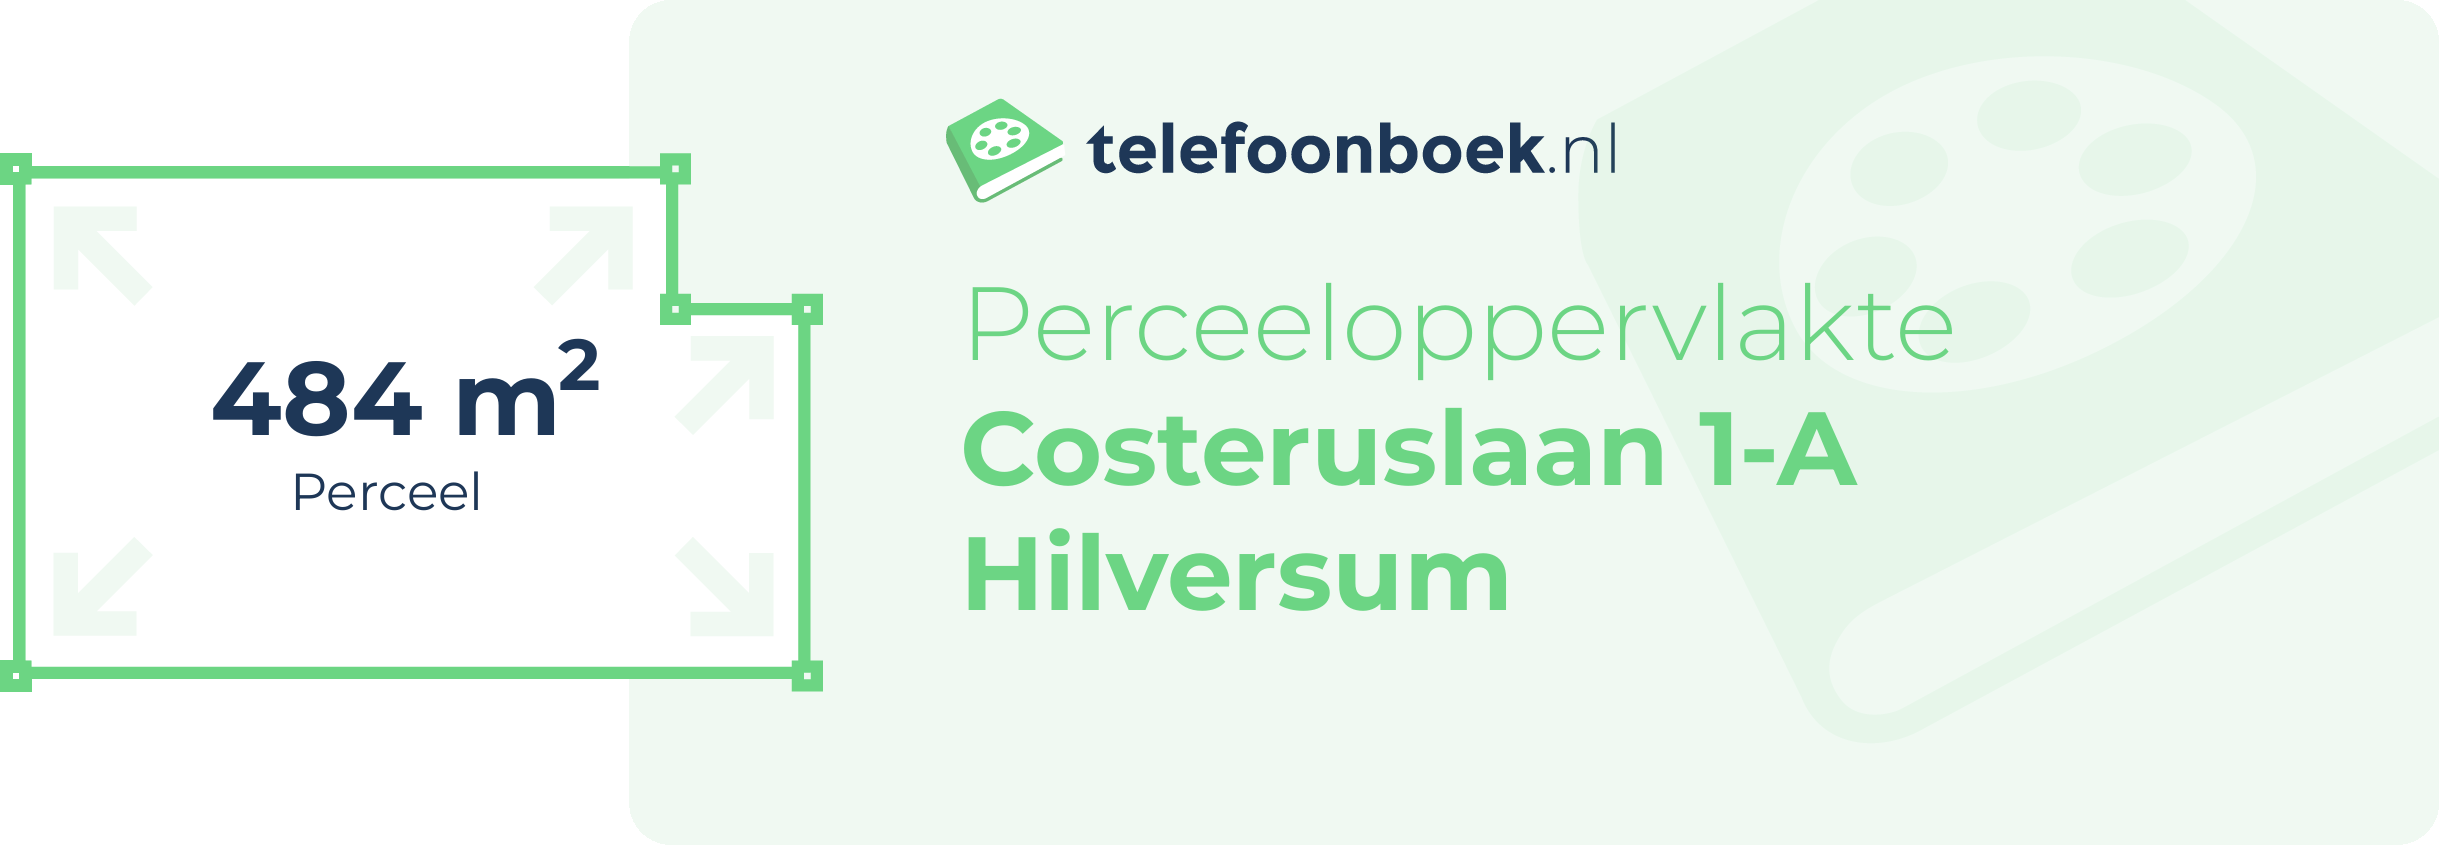 Perceeloppervlakte Costeruslaan 1-A Hilversum